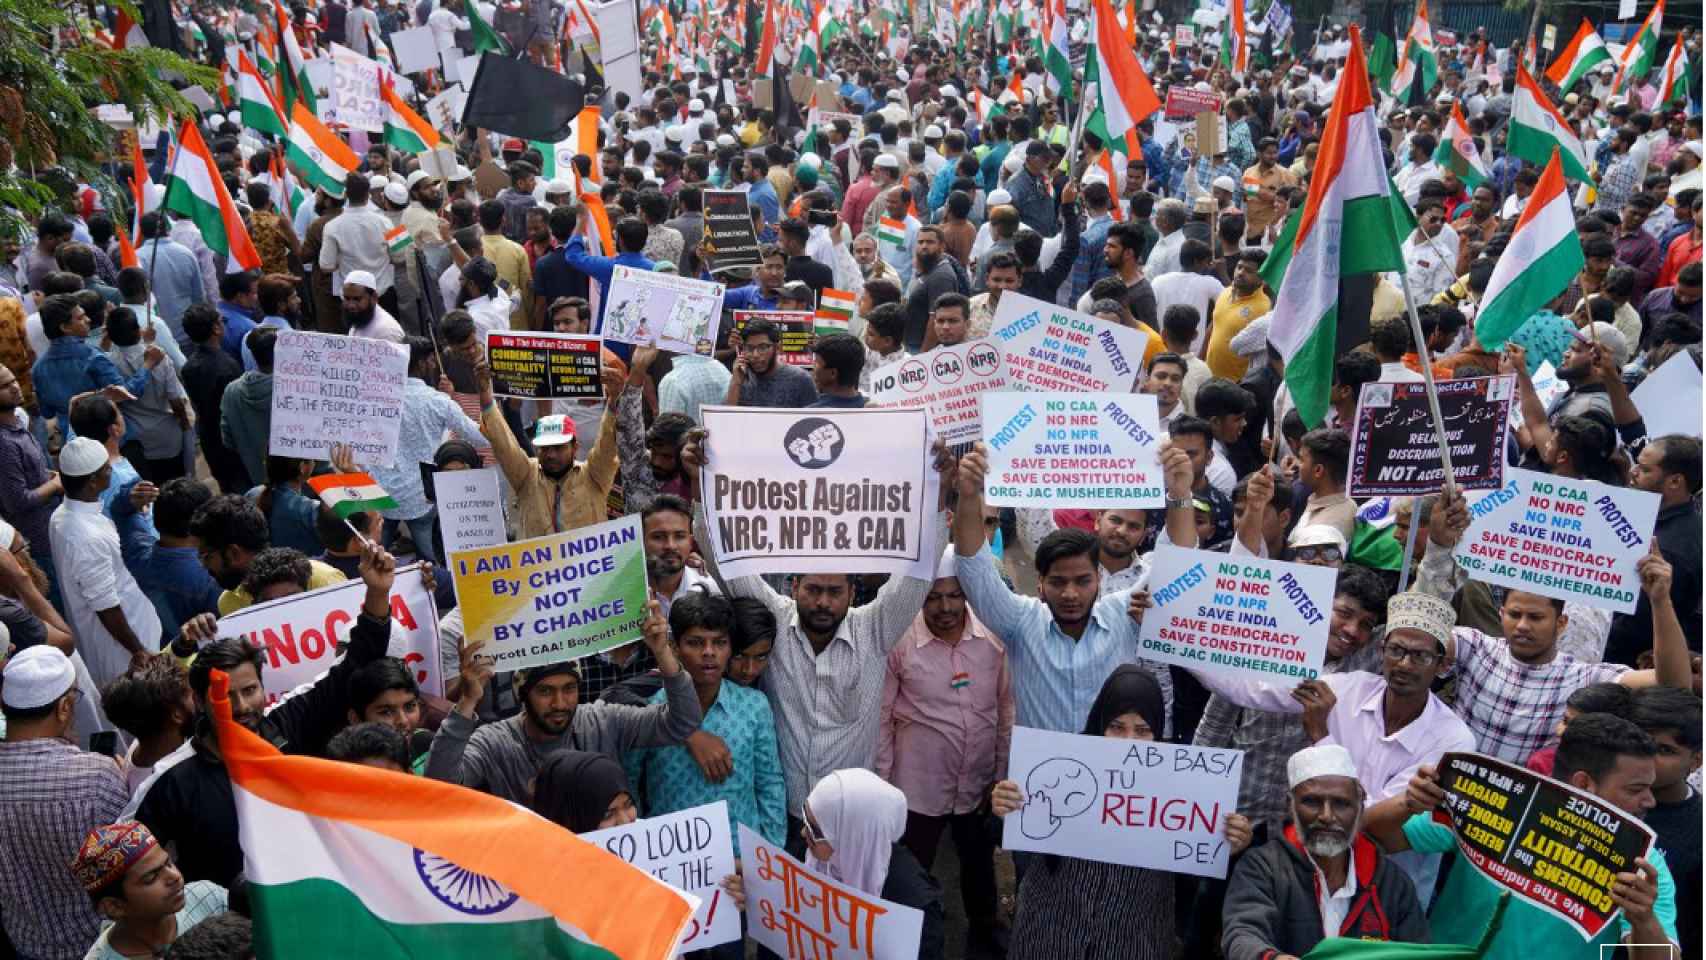 Miles de personas marcharon contra la Ley de ciudadanía por considerarla discriminatoria contra los musulmanes. Imagen tomada en enero en Hyderabad.